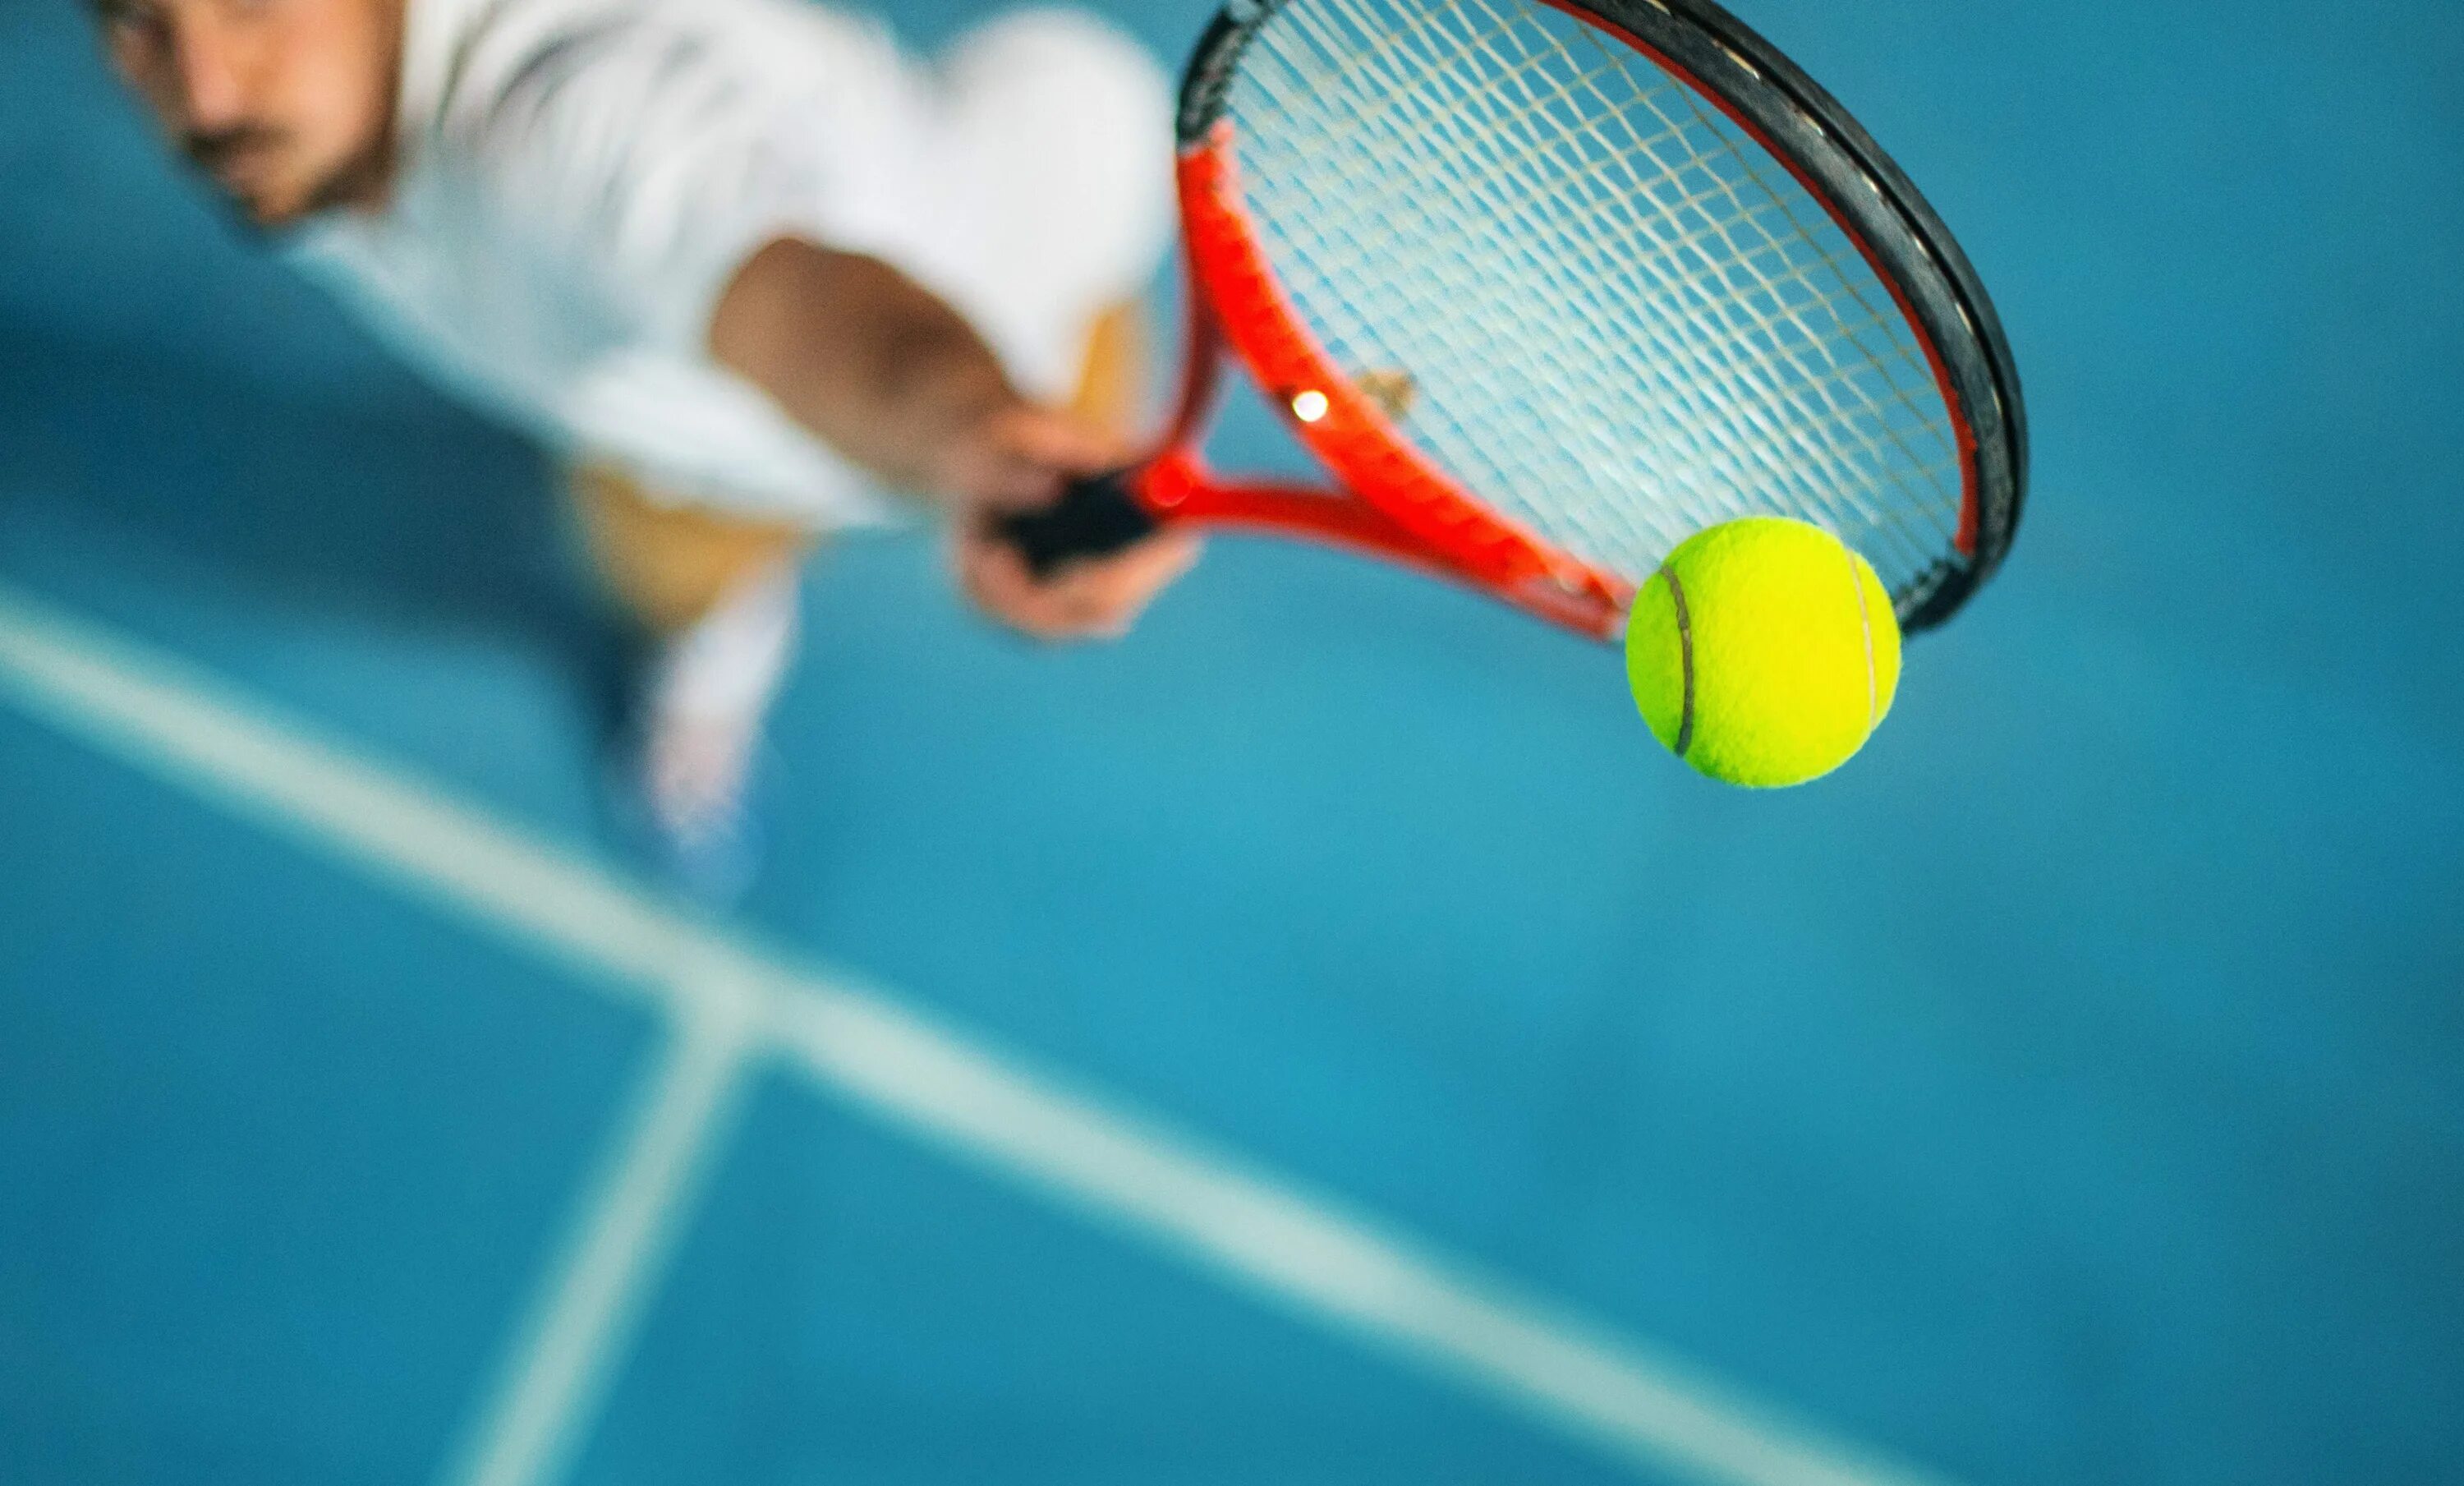 False sports. Теннис. Большой теннис. Теннисная ракетка и мяч на корте. Спорт большой теннис.